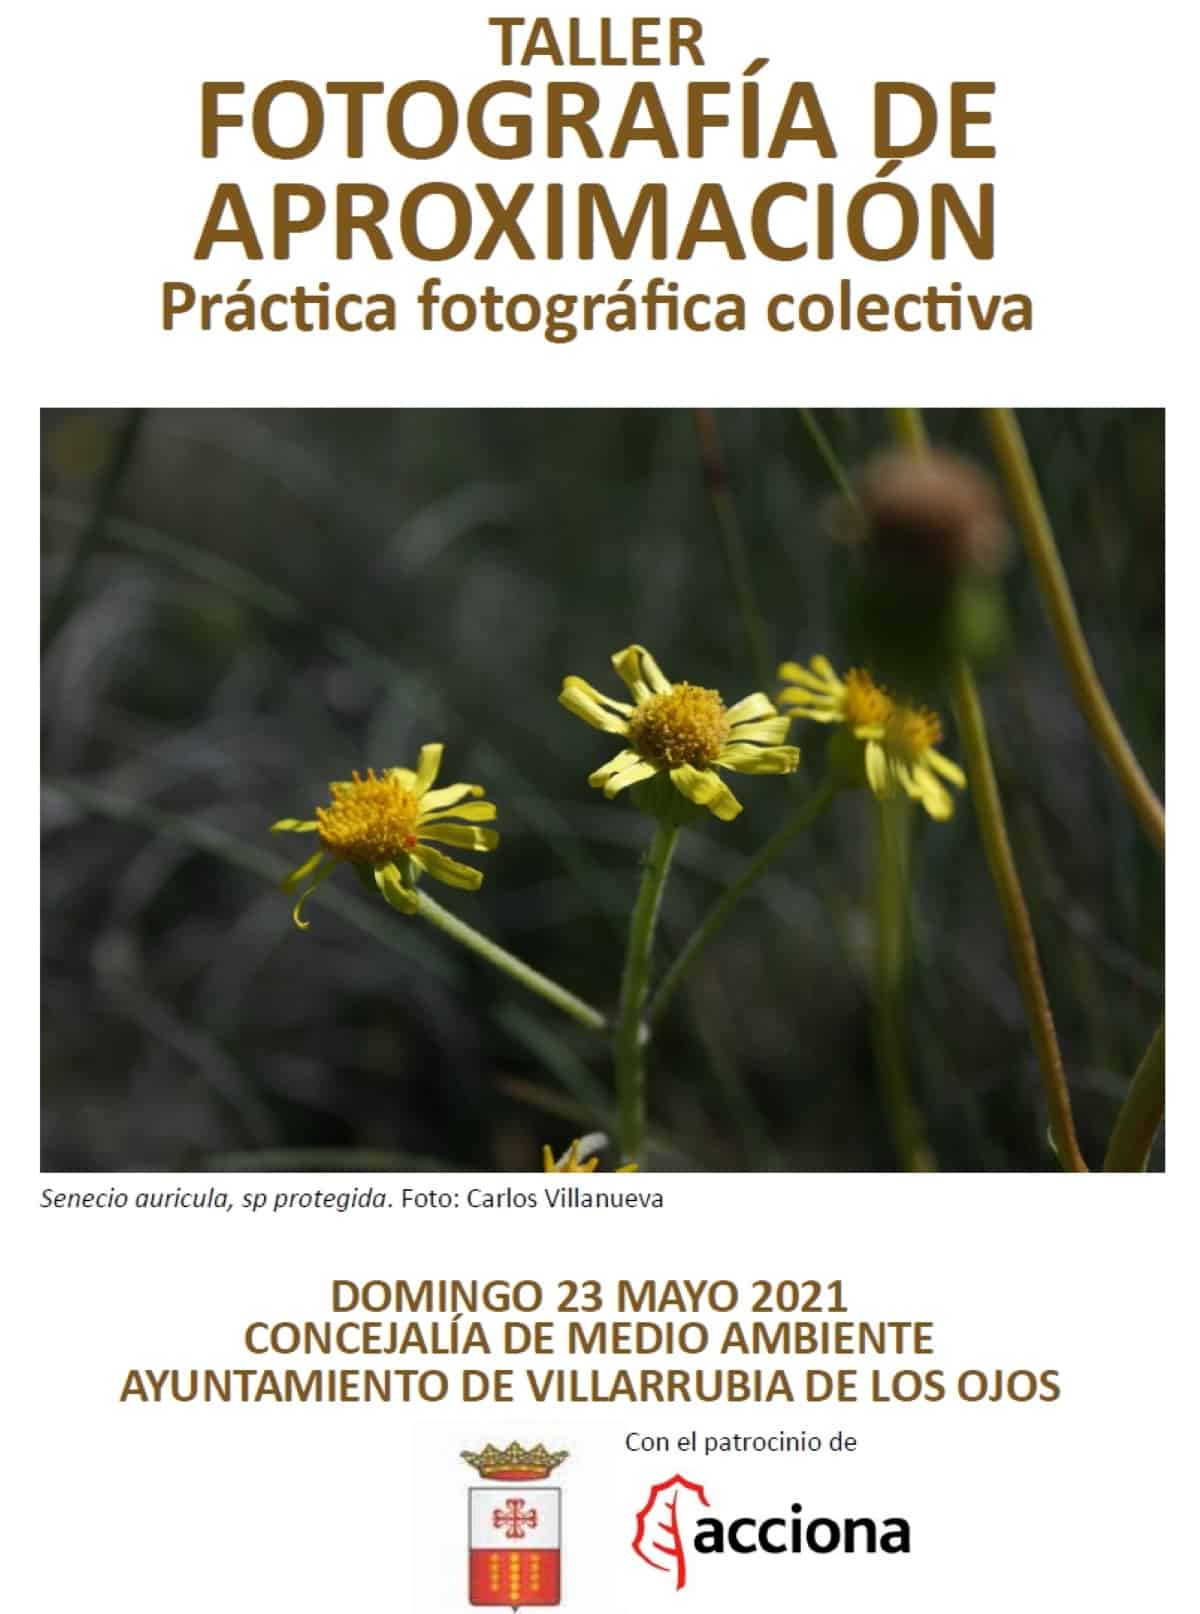 Taller de fotografía de aproximación en Villarrubia de los Ojos el 21 y 23 de mayo